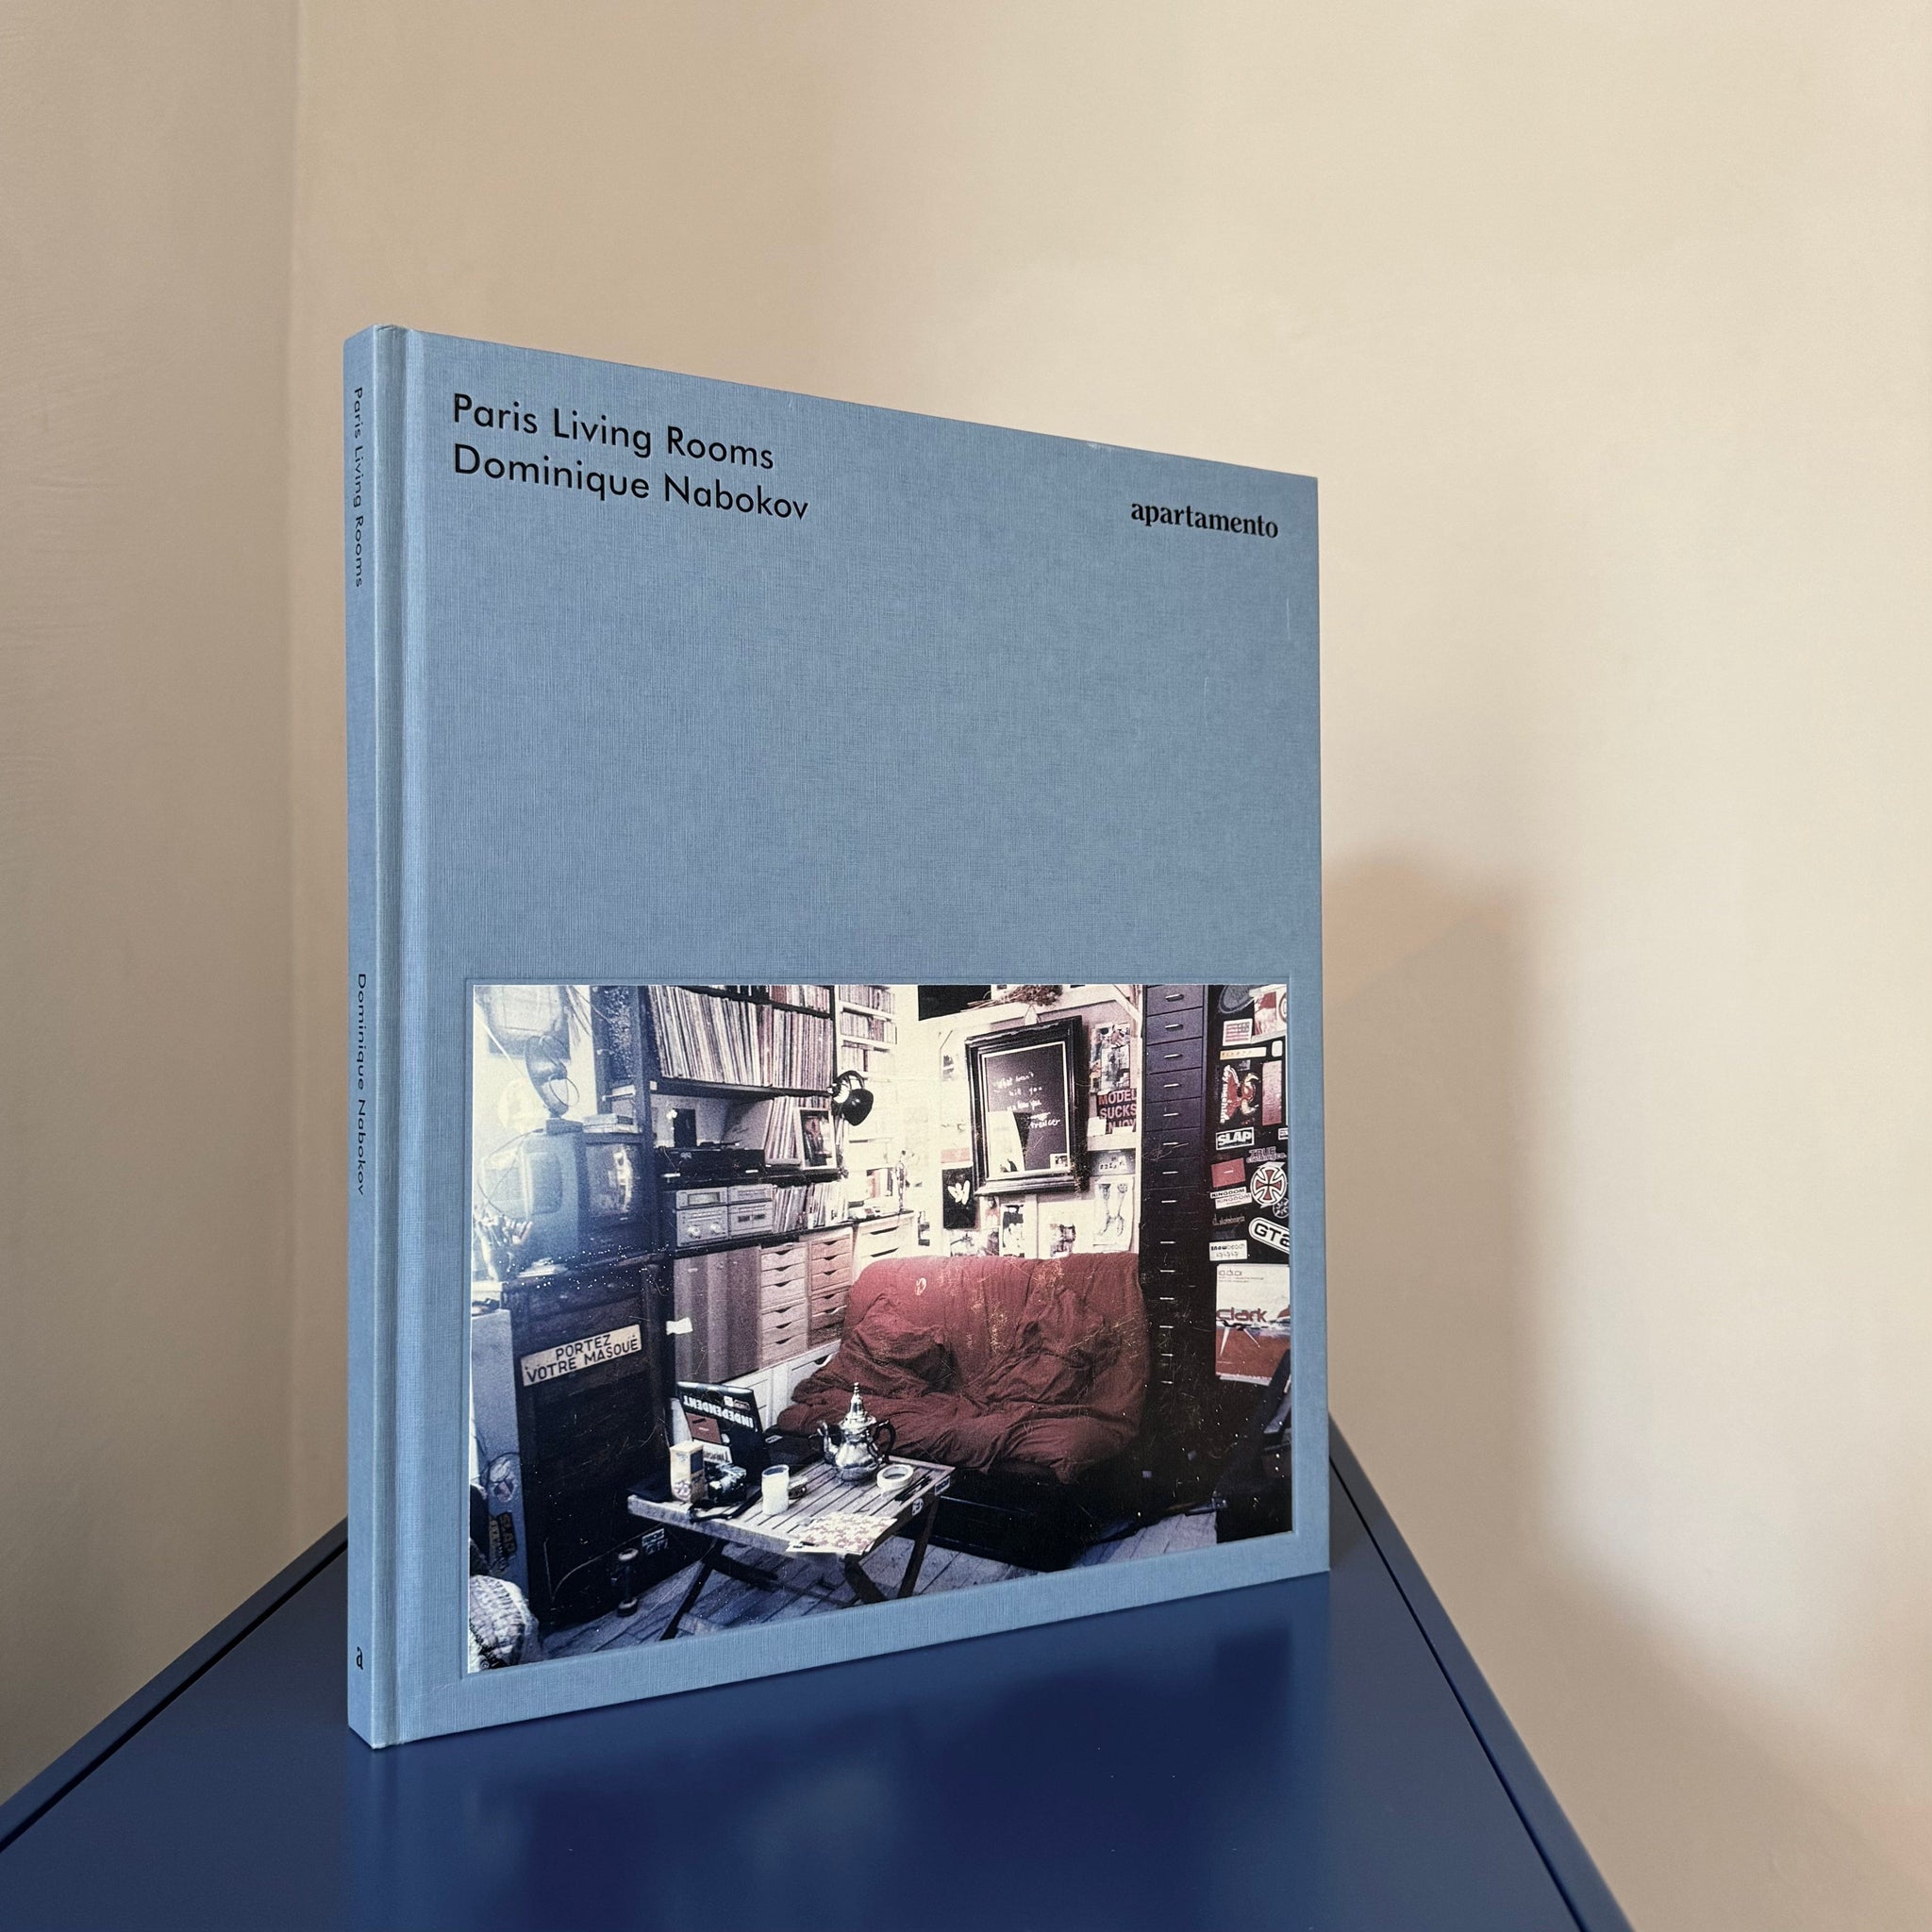 Apartamento - Paris Living Rooms - Books - DANSKmadeforrooms